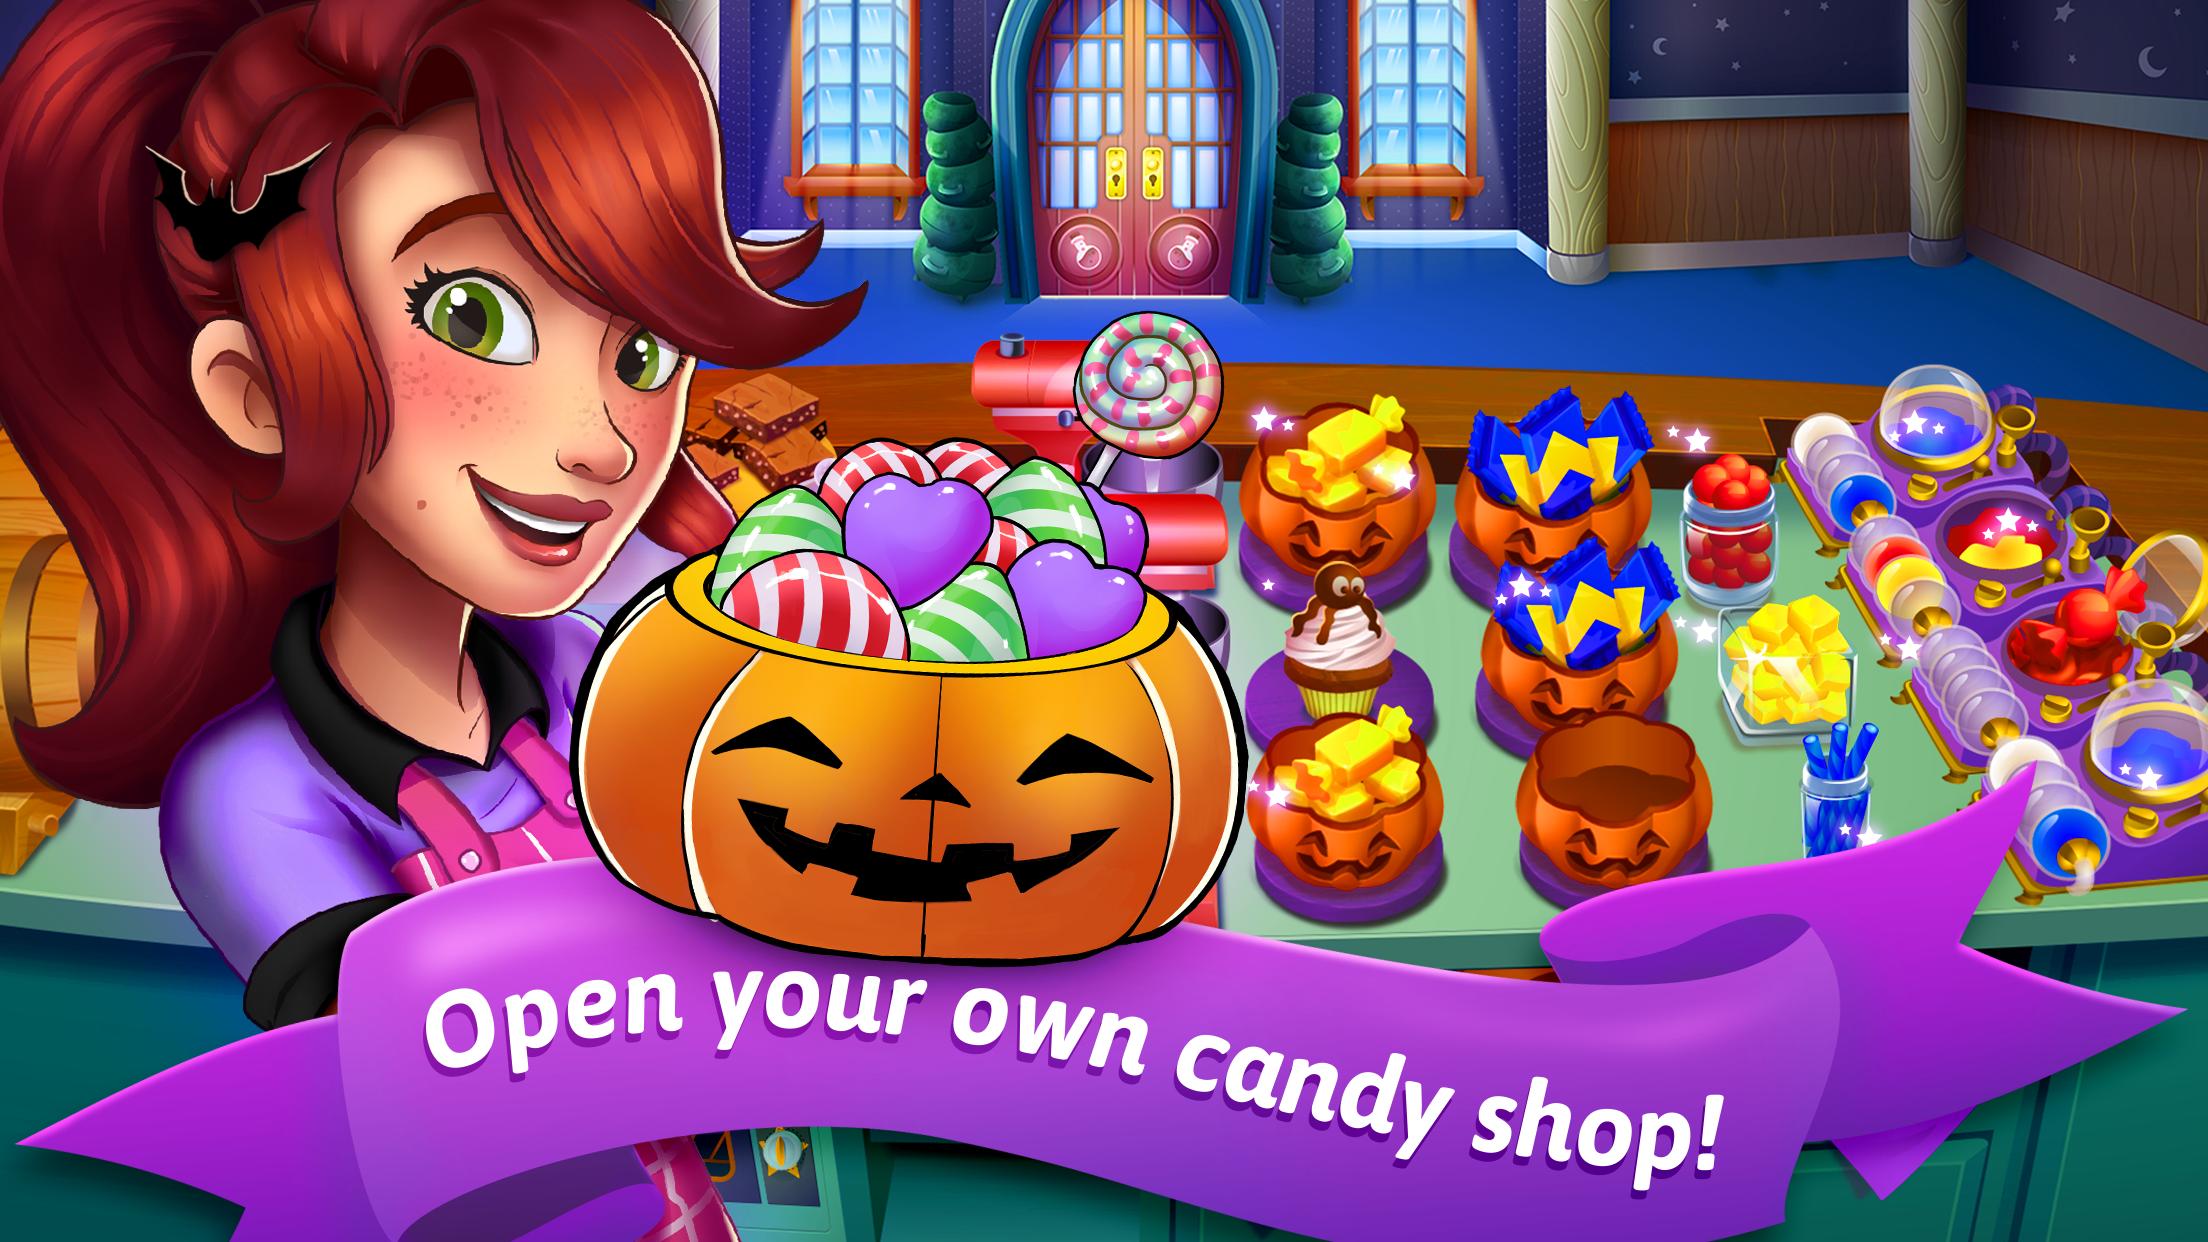 Candy candy shop 1. Candy shop игра. Игра кулинария Хэллоуин. Игры про Хэллоуин и конфеты. Игры шоппинг спа Хэллоуин.